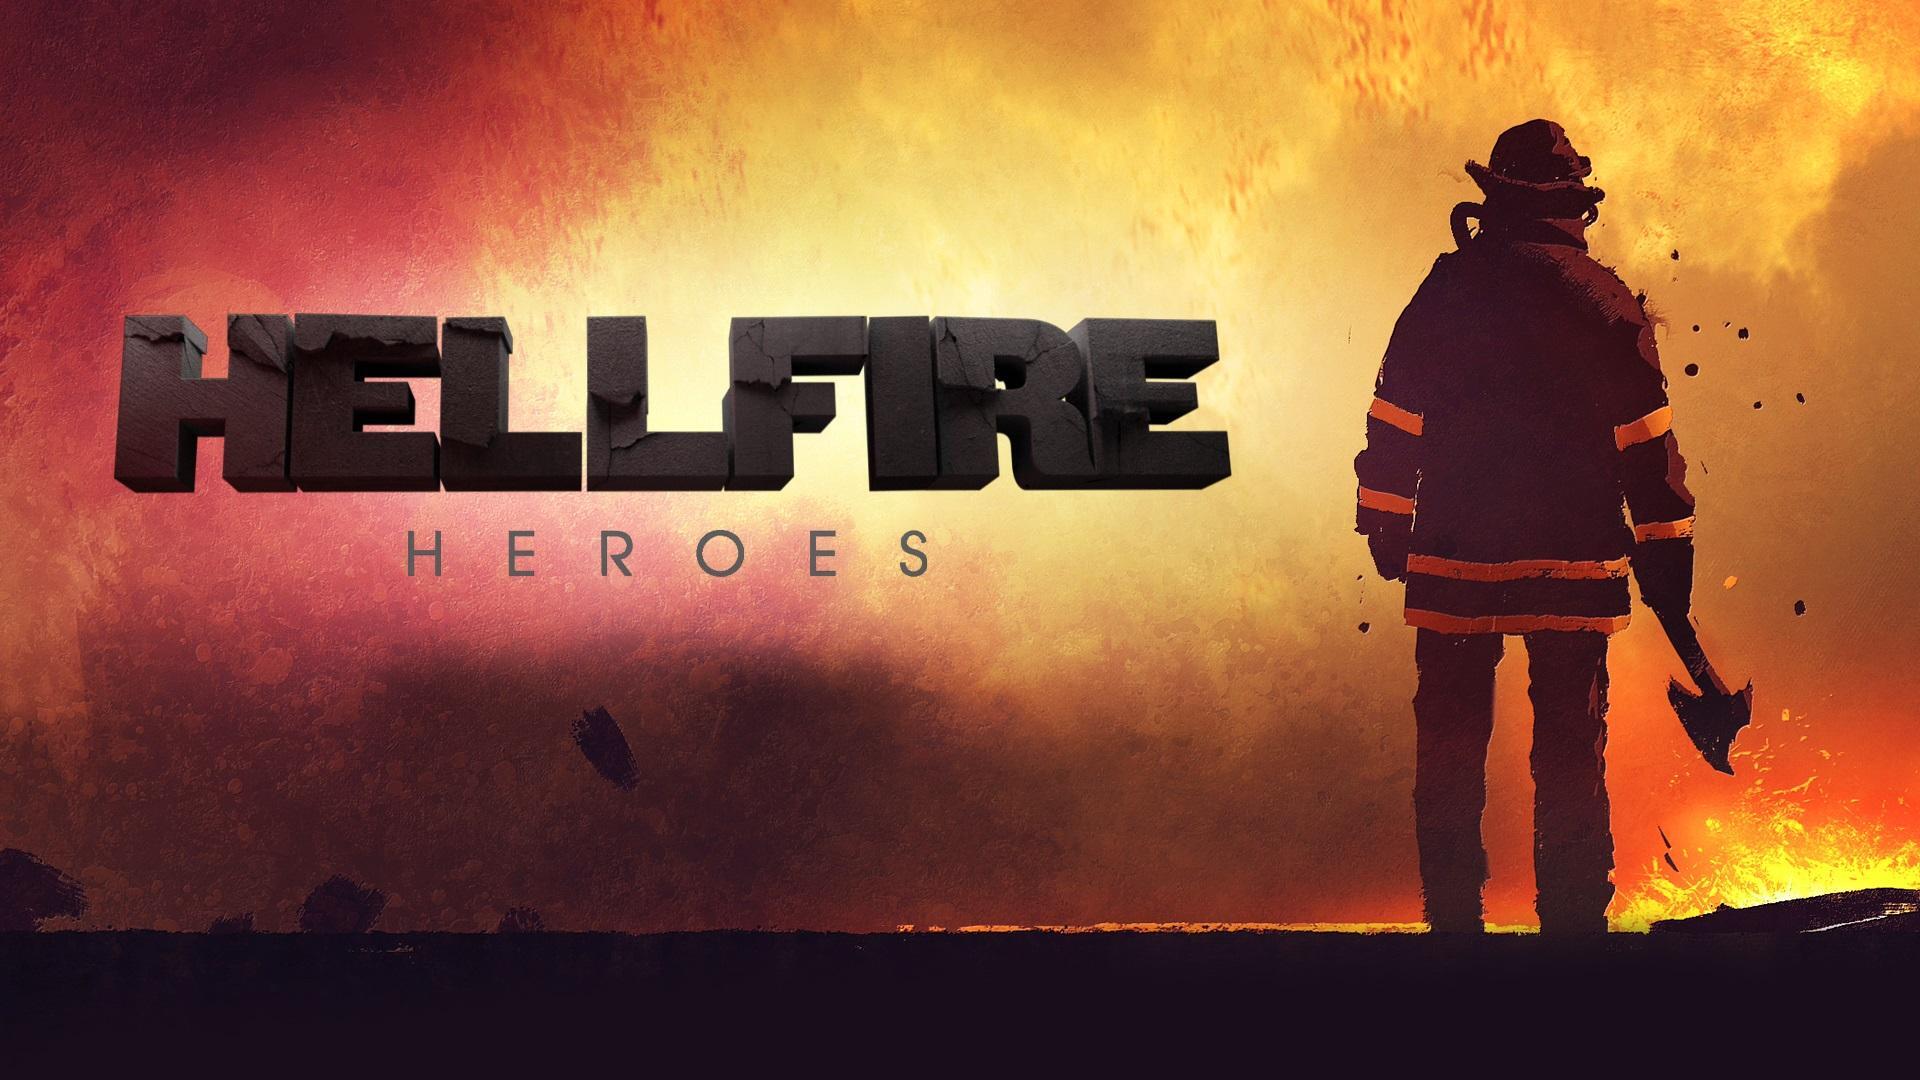 Hellfire Heroes